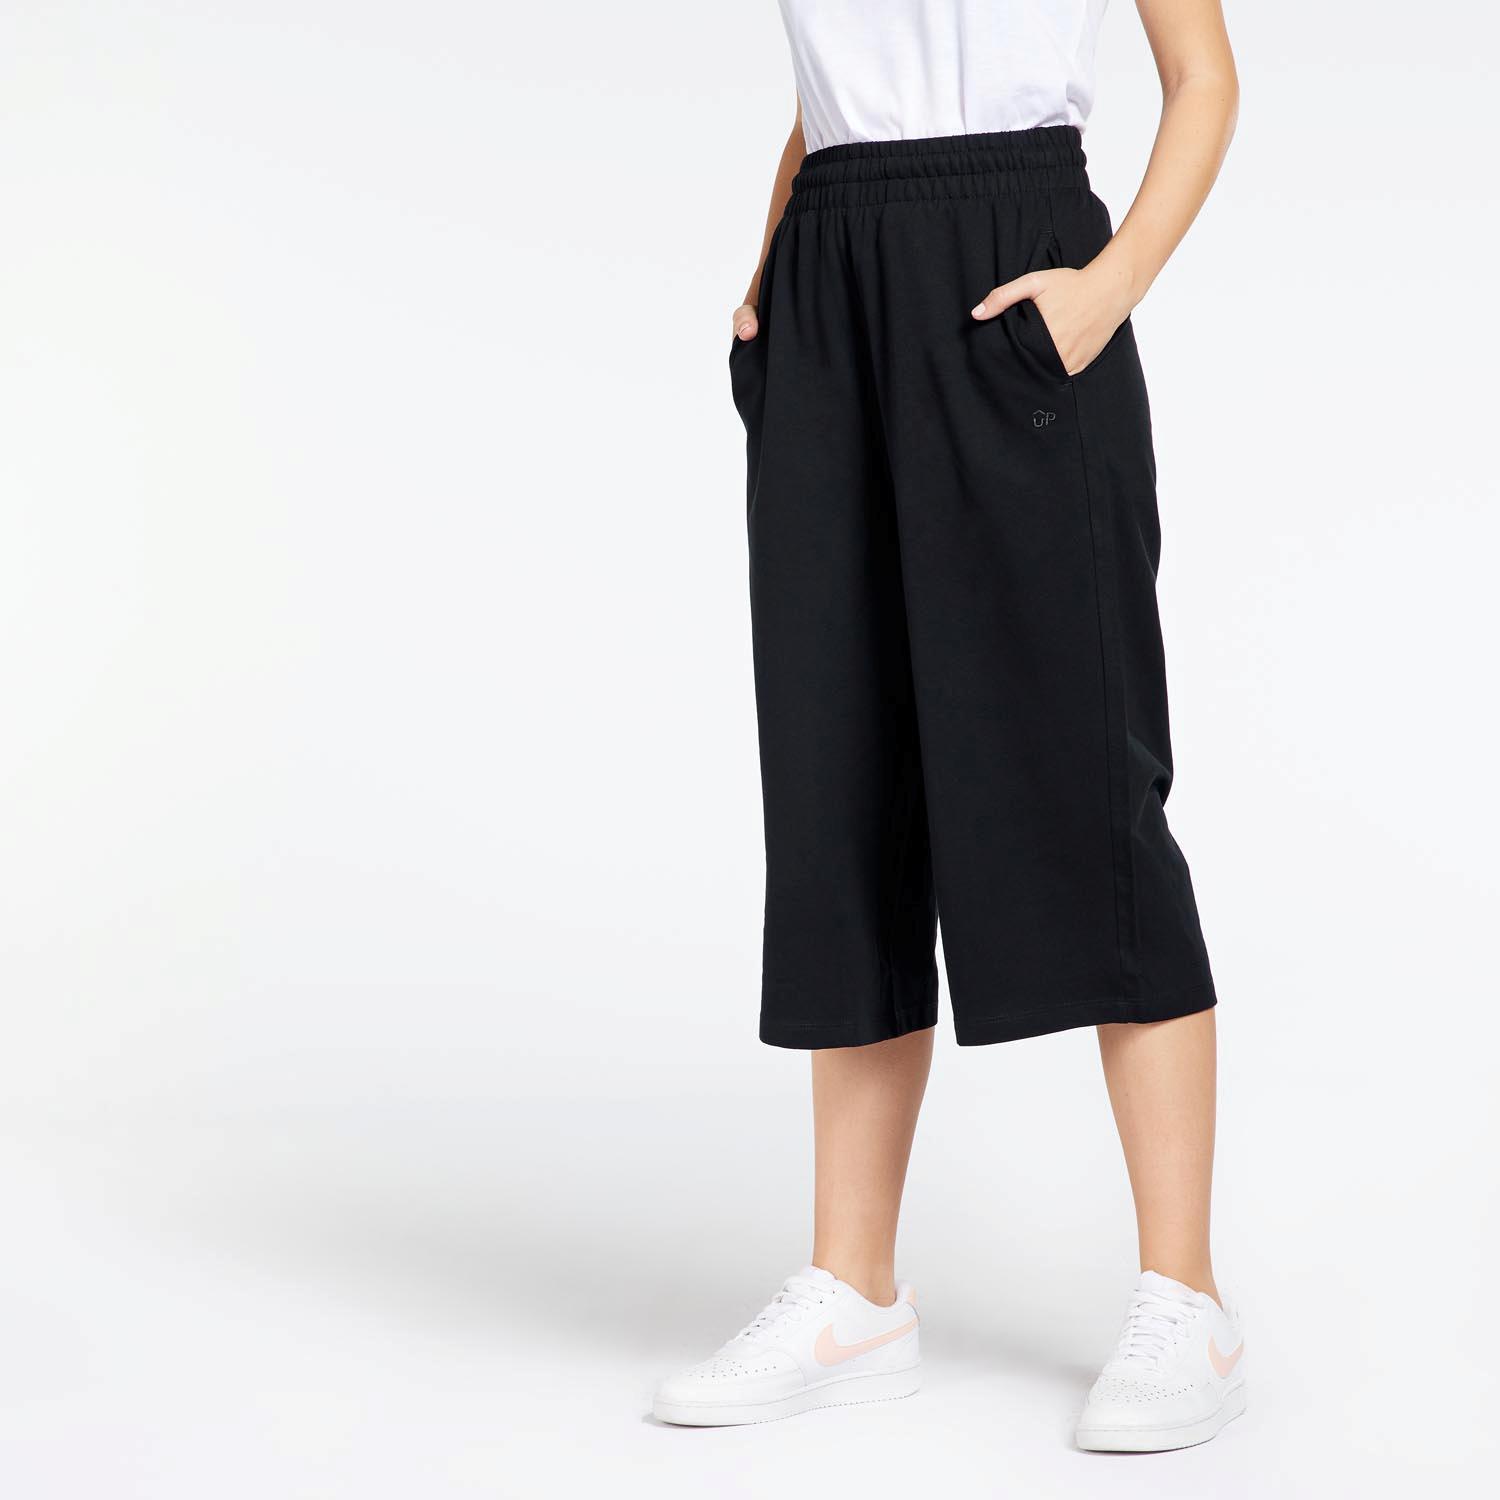 Nuevo Pantalones Mujer | Compra a Precios Baratos